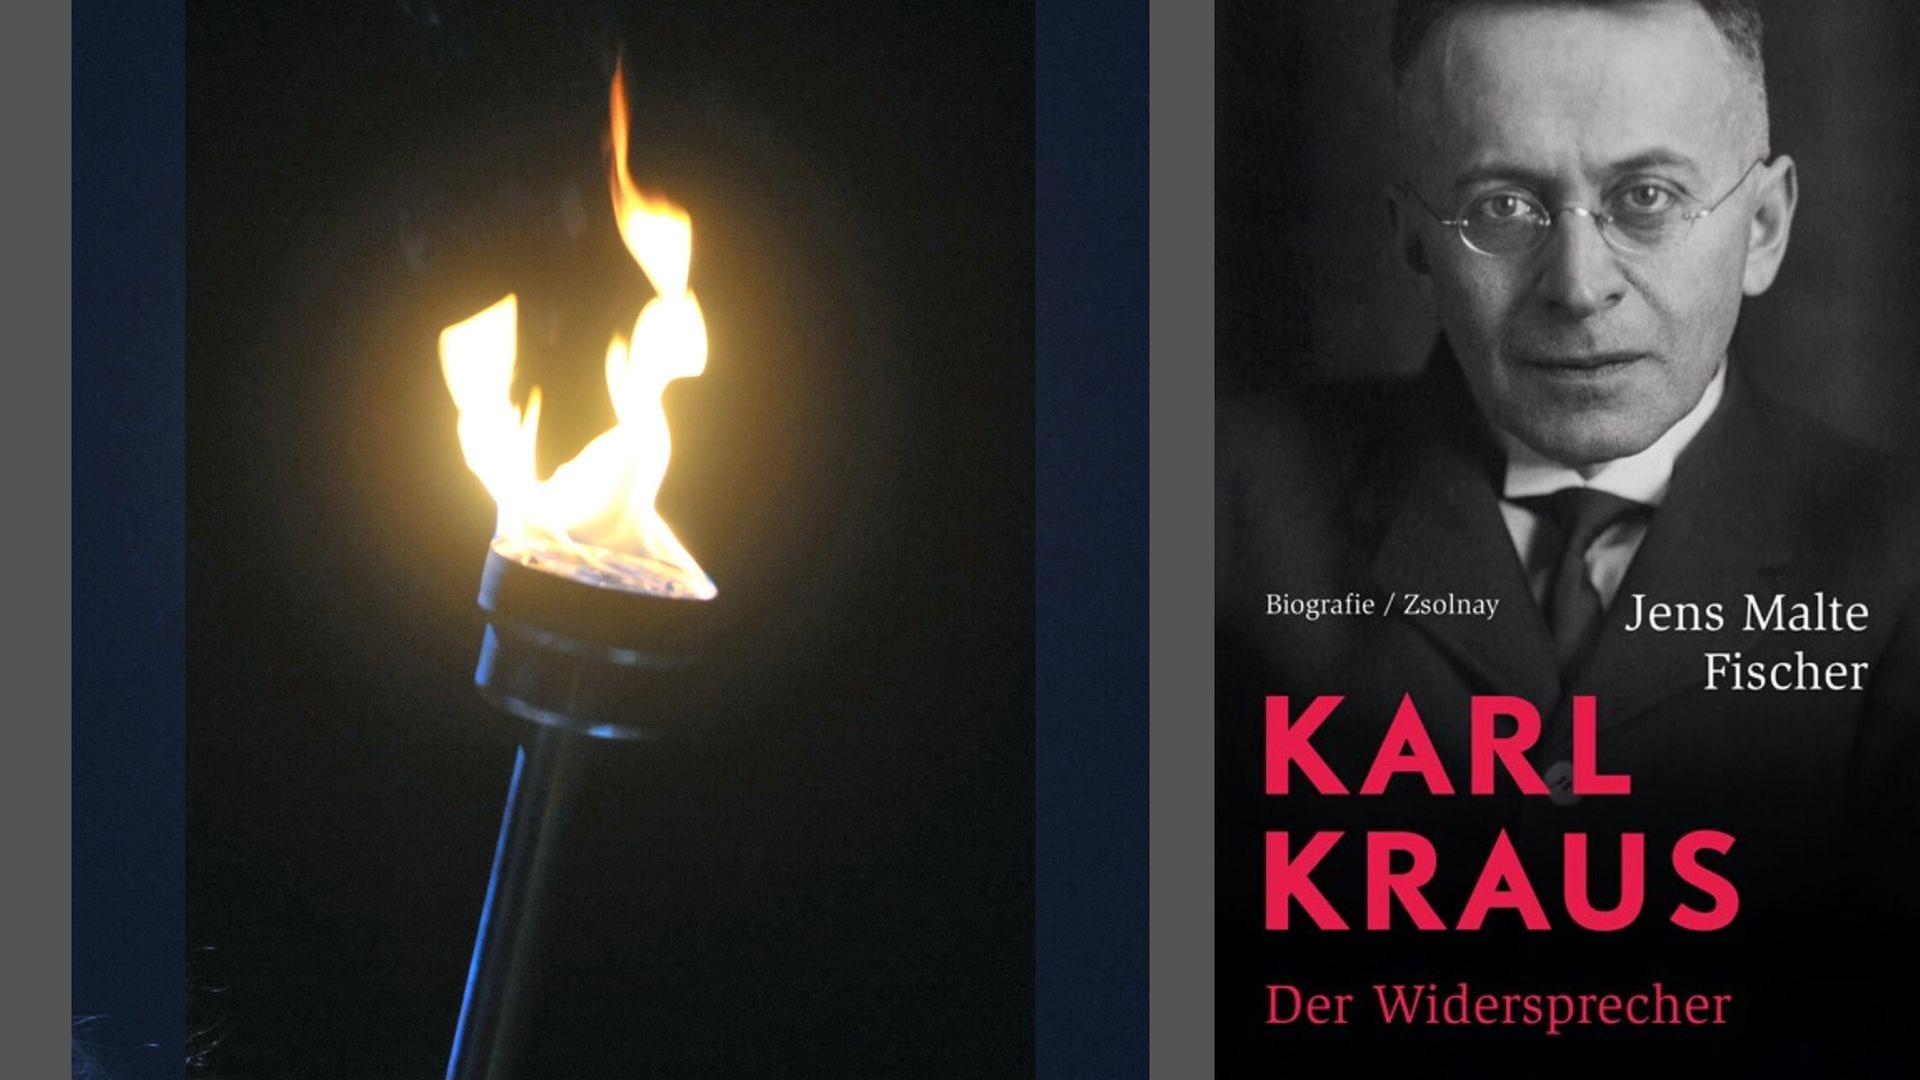 Buchcover: Jens Malte Fischer: „Karl Kraus. Der Widersprecher“ und Fackel